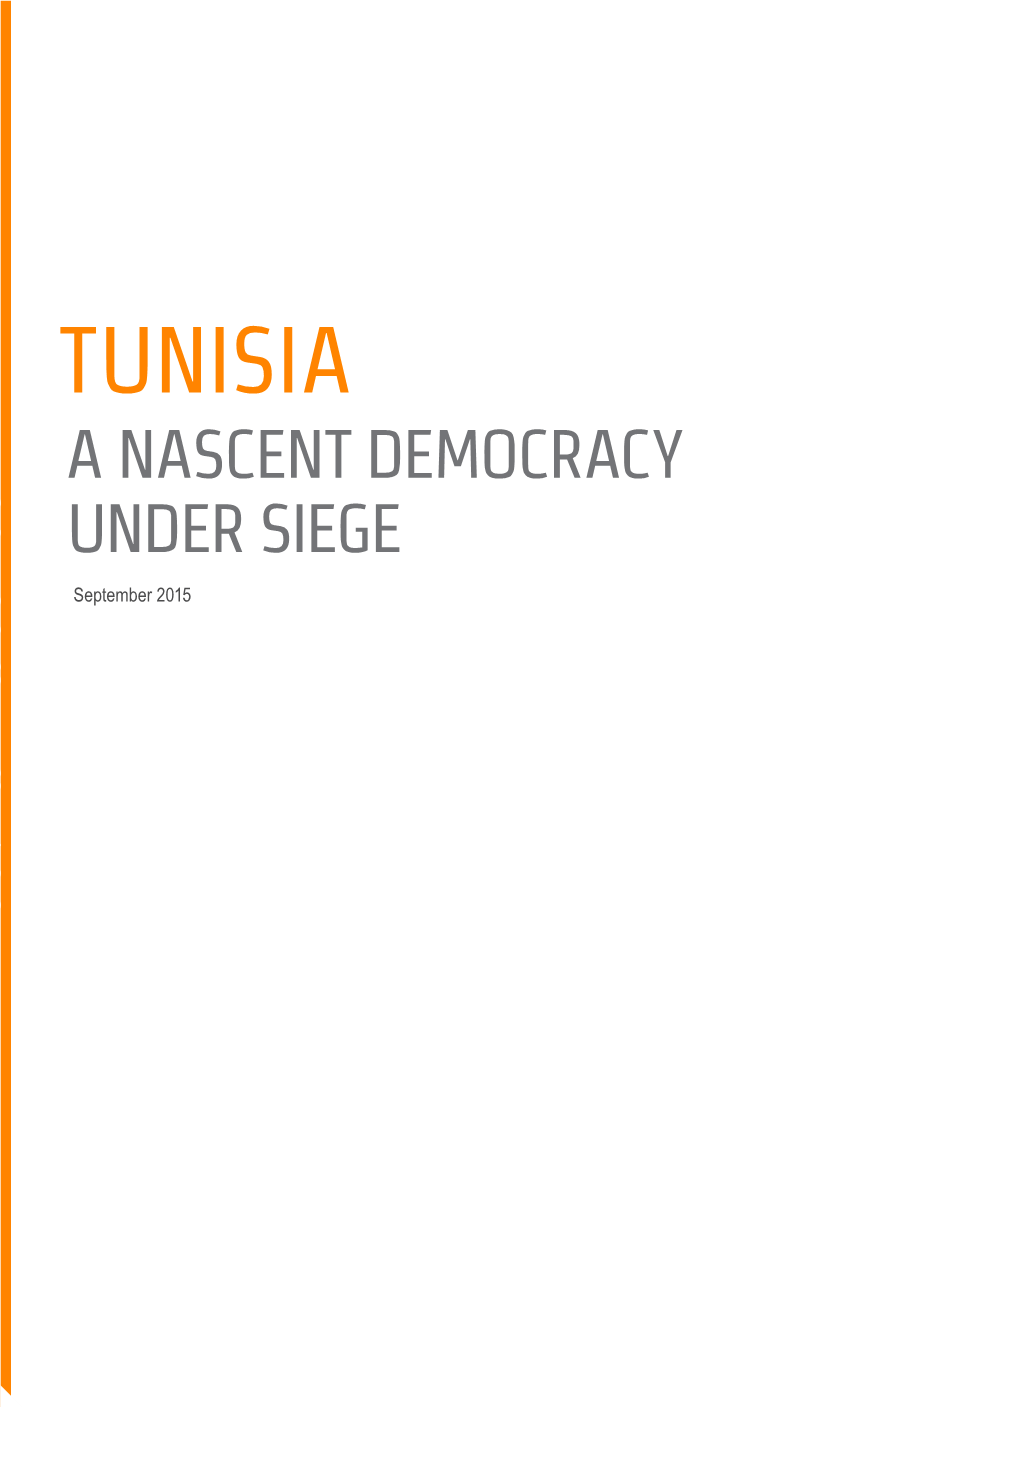 Tunisia, a Nascent Democracy Under Siege